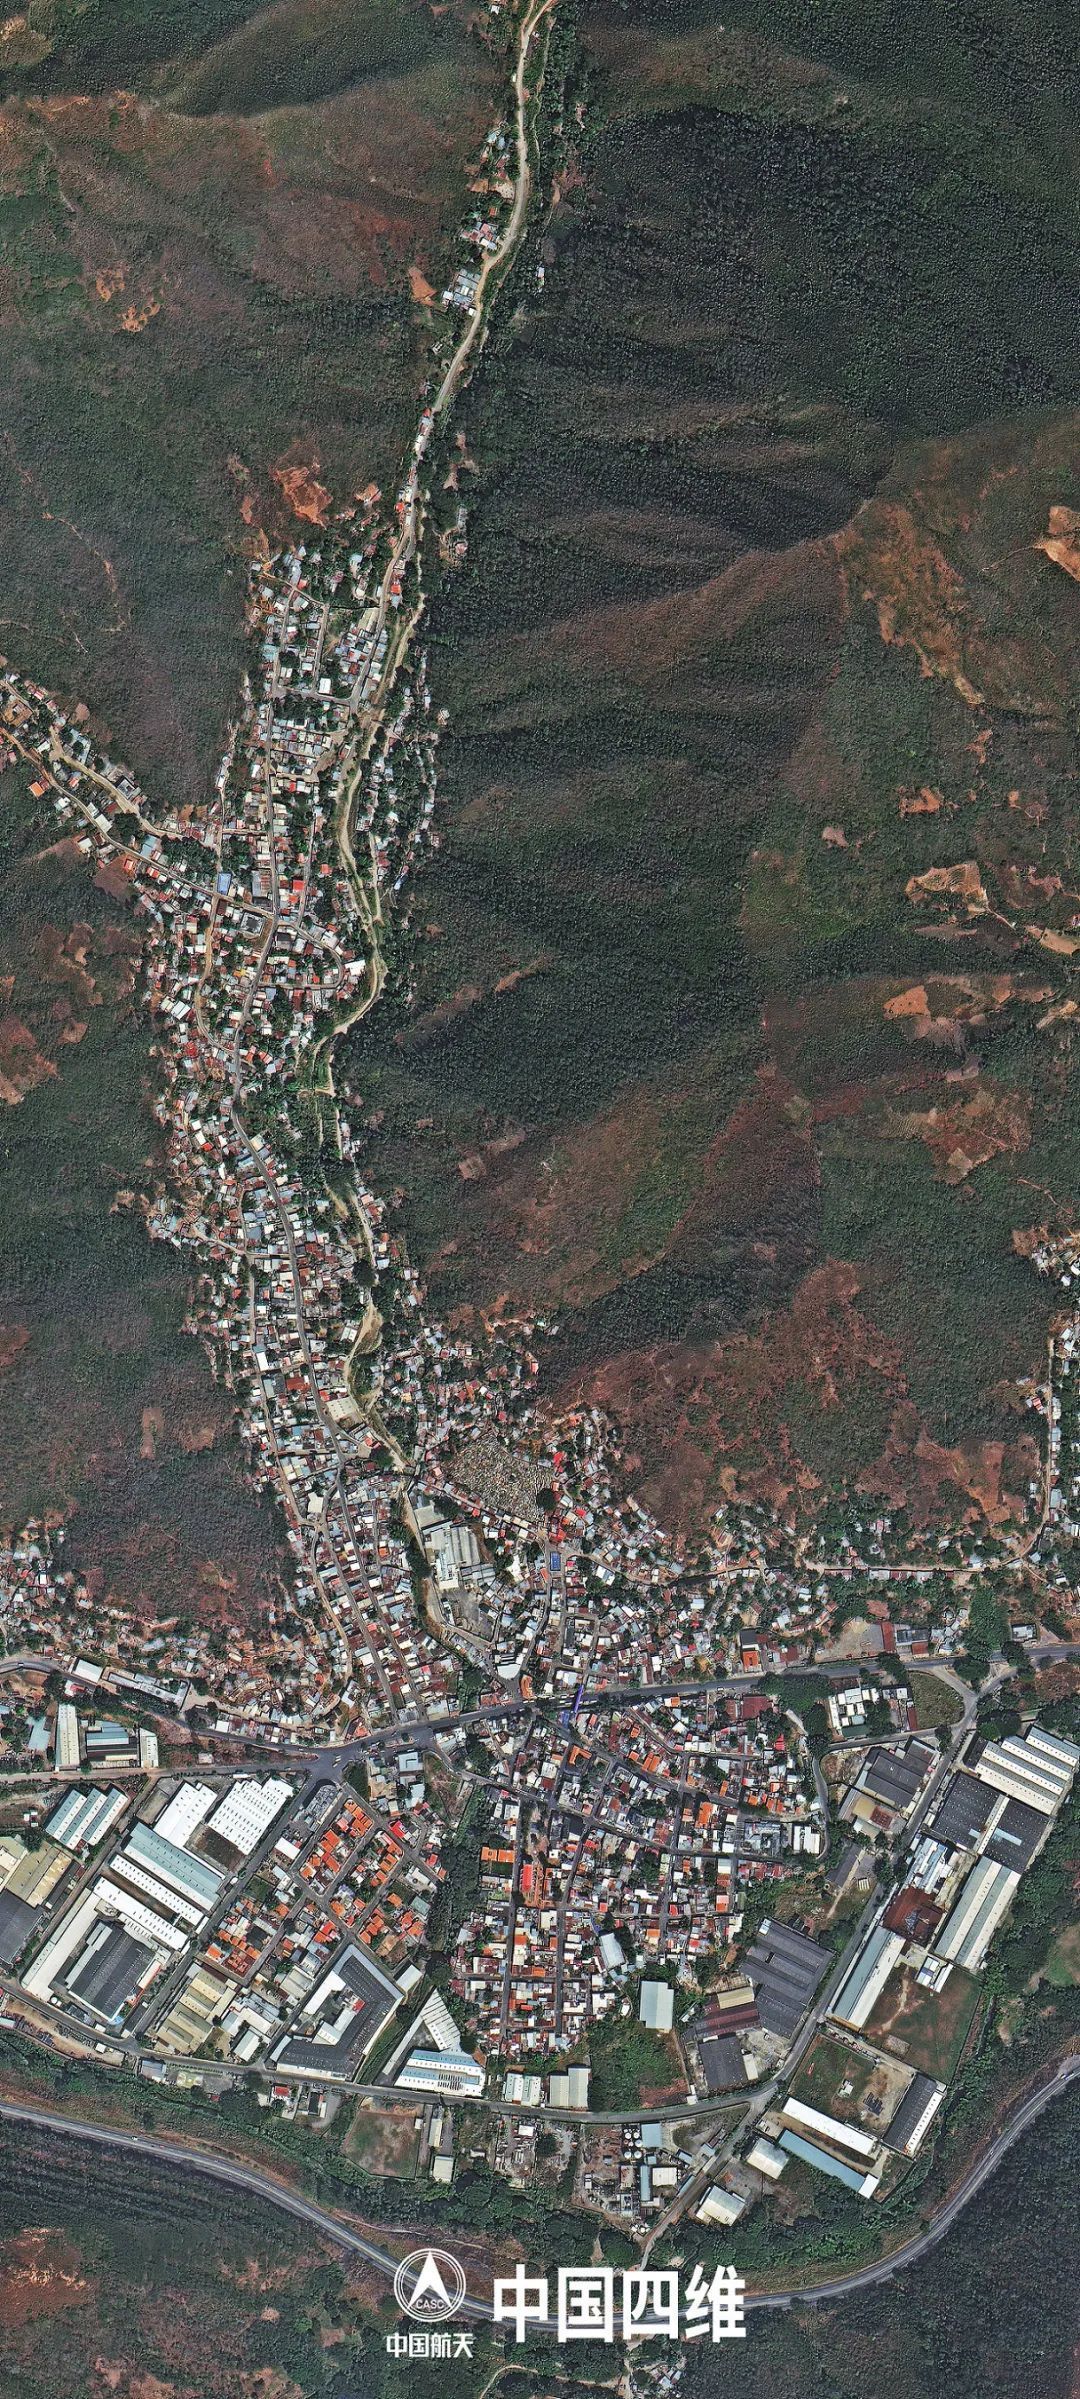 多颗中国卫星紧急参与委内瑞拉抗洪救灾